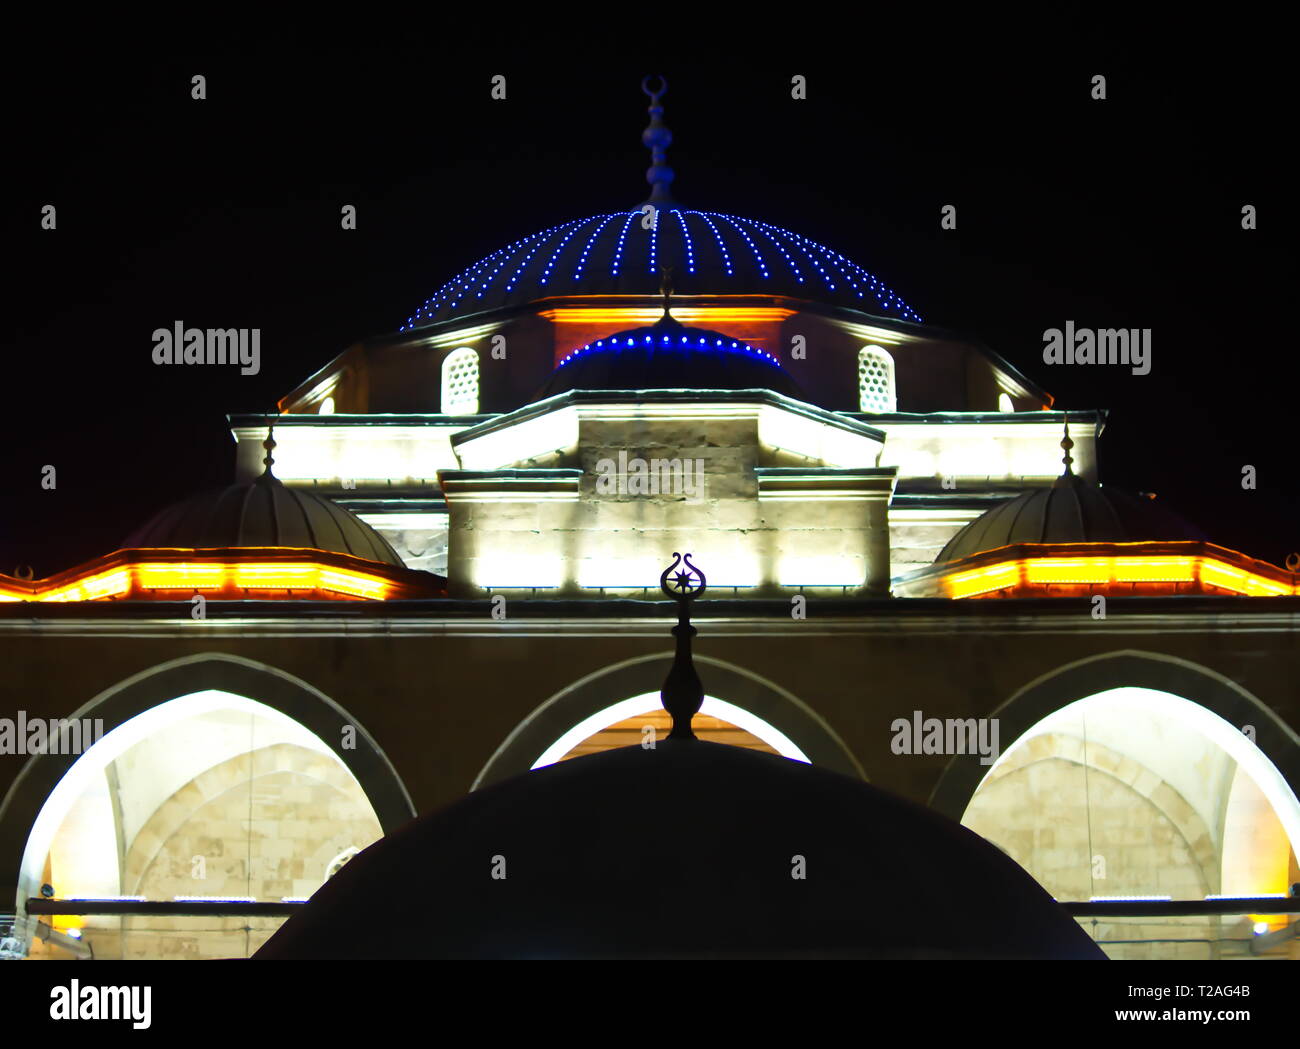 La moschea illuminata di notte. cupola illuminata di notte nel buio Foto Stock